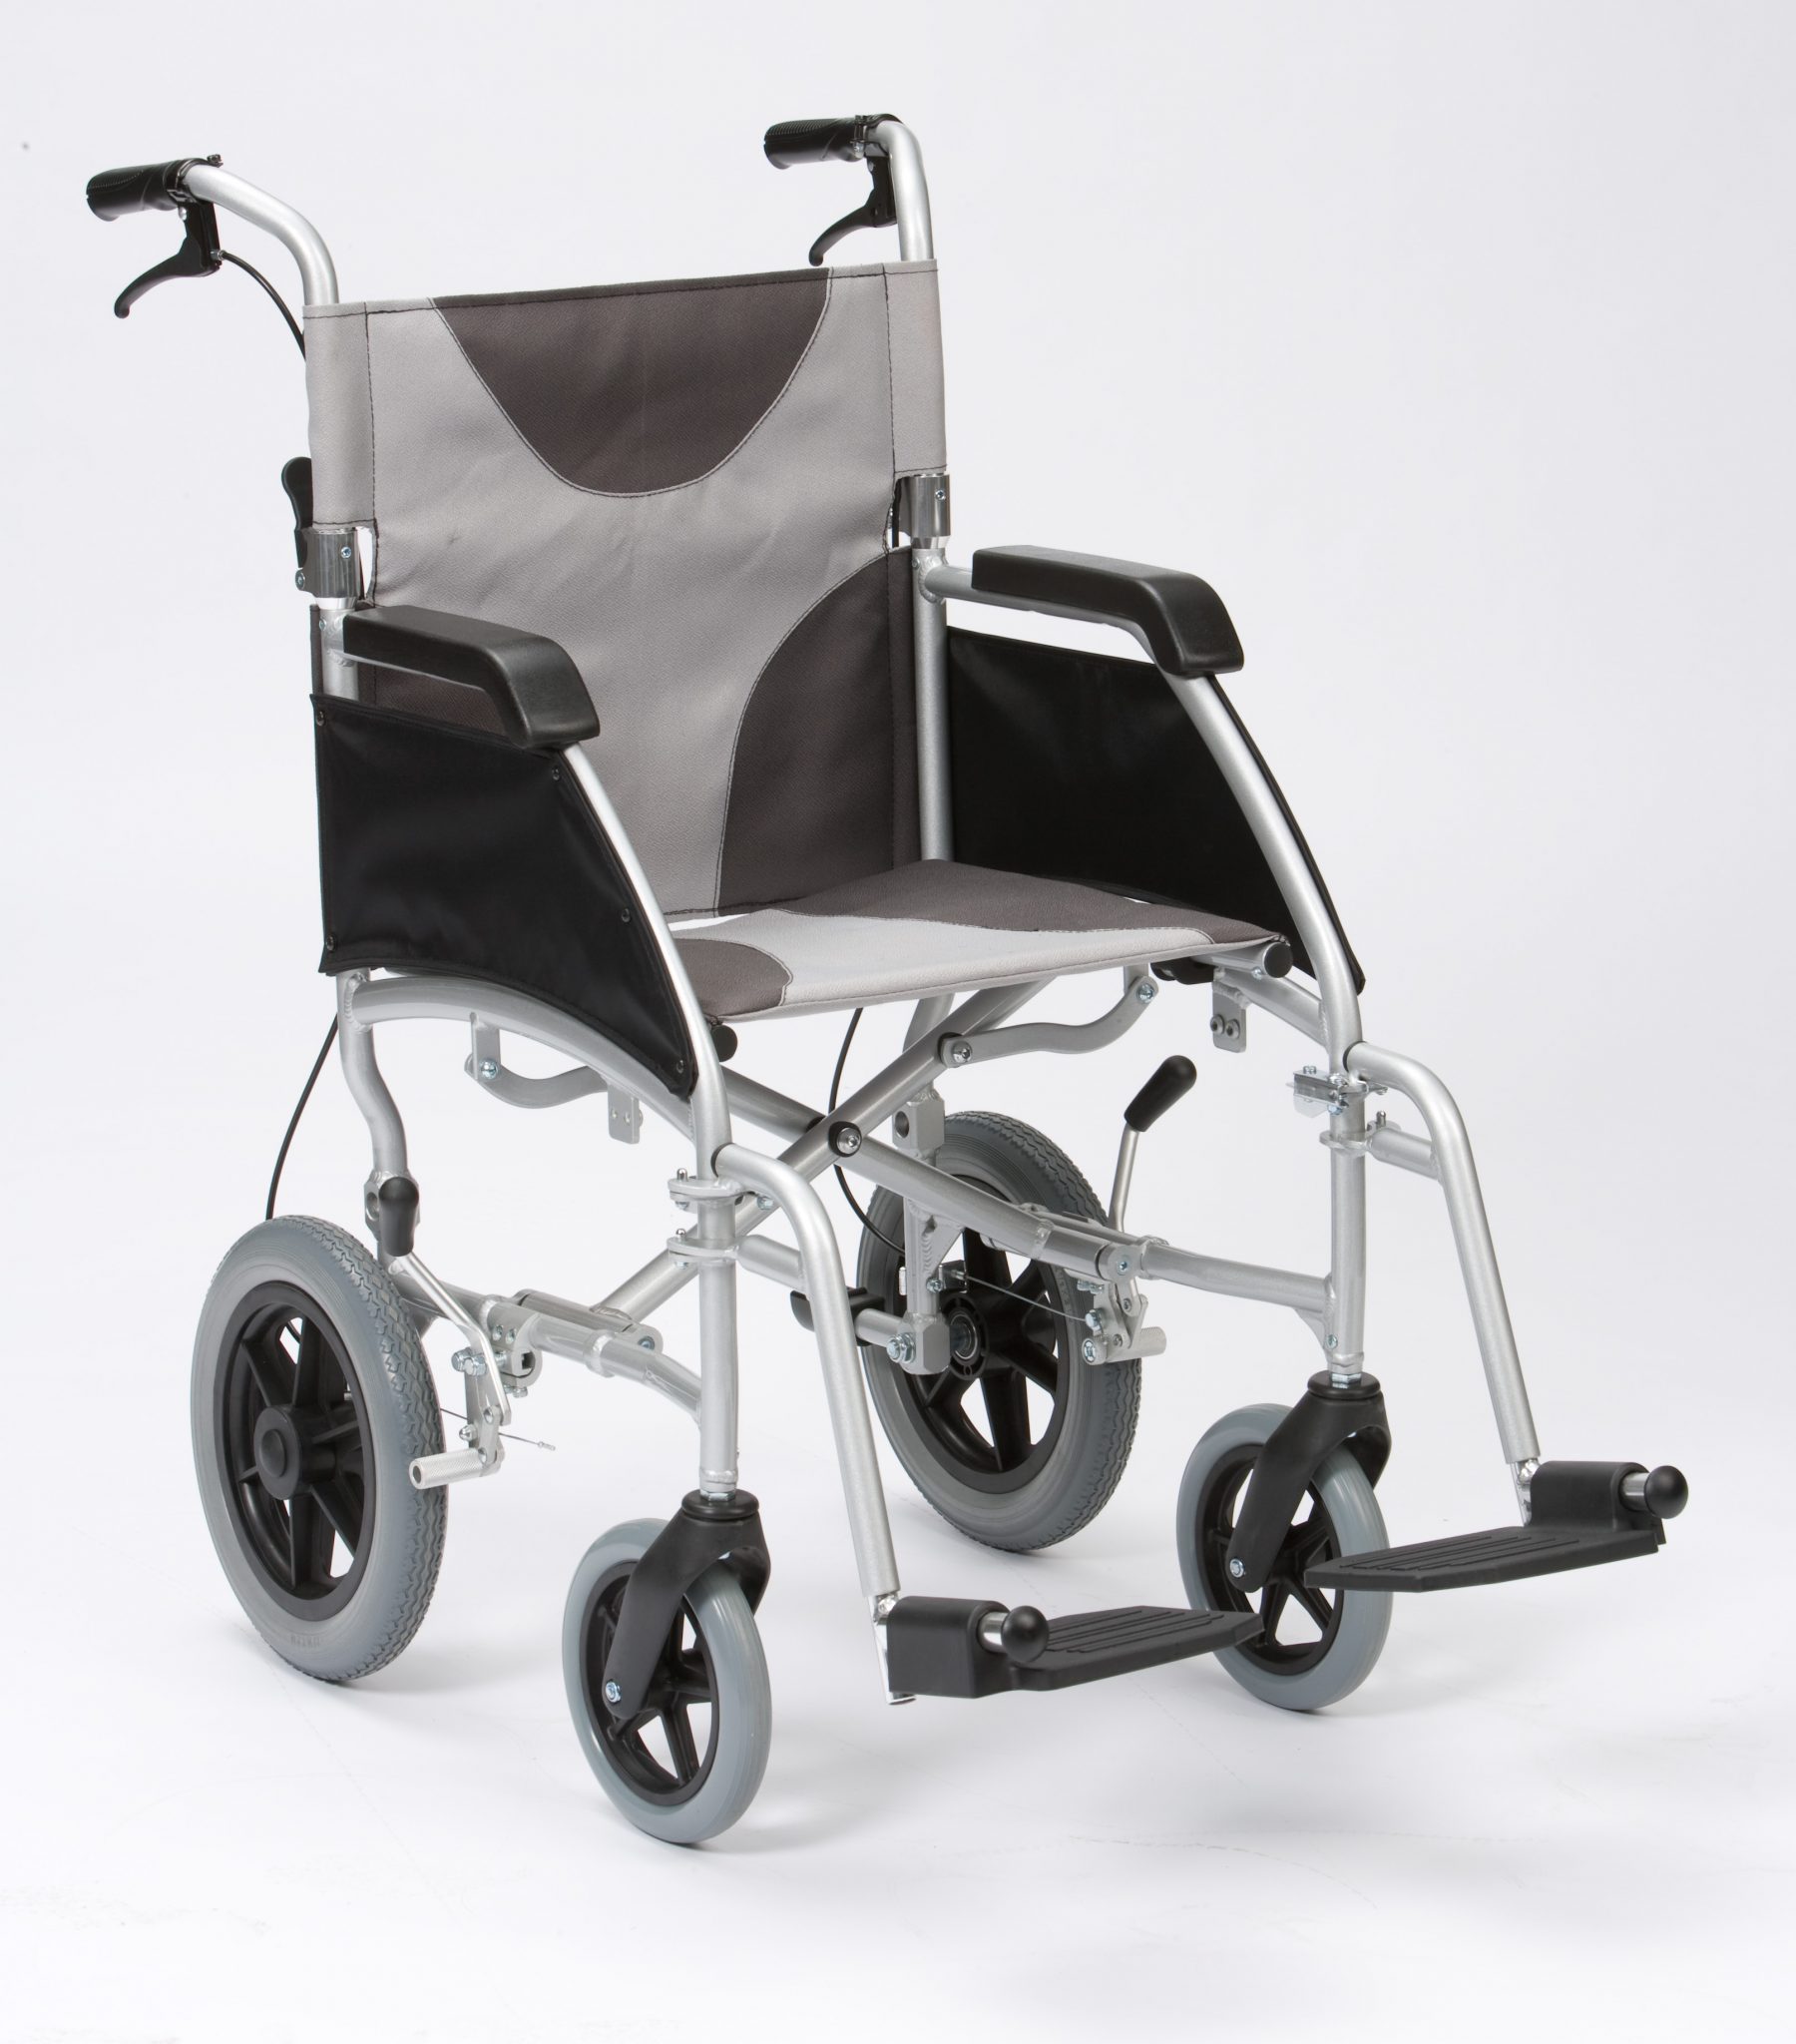 Ultra Lightweight wheelchair